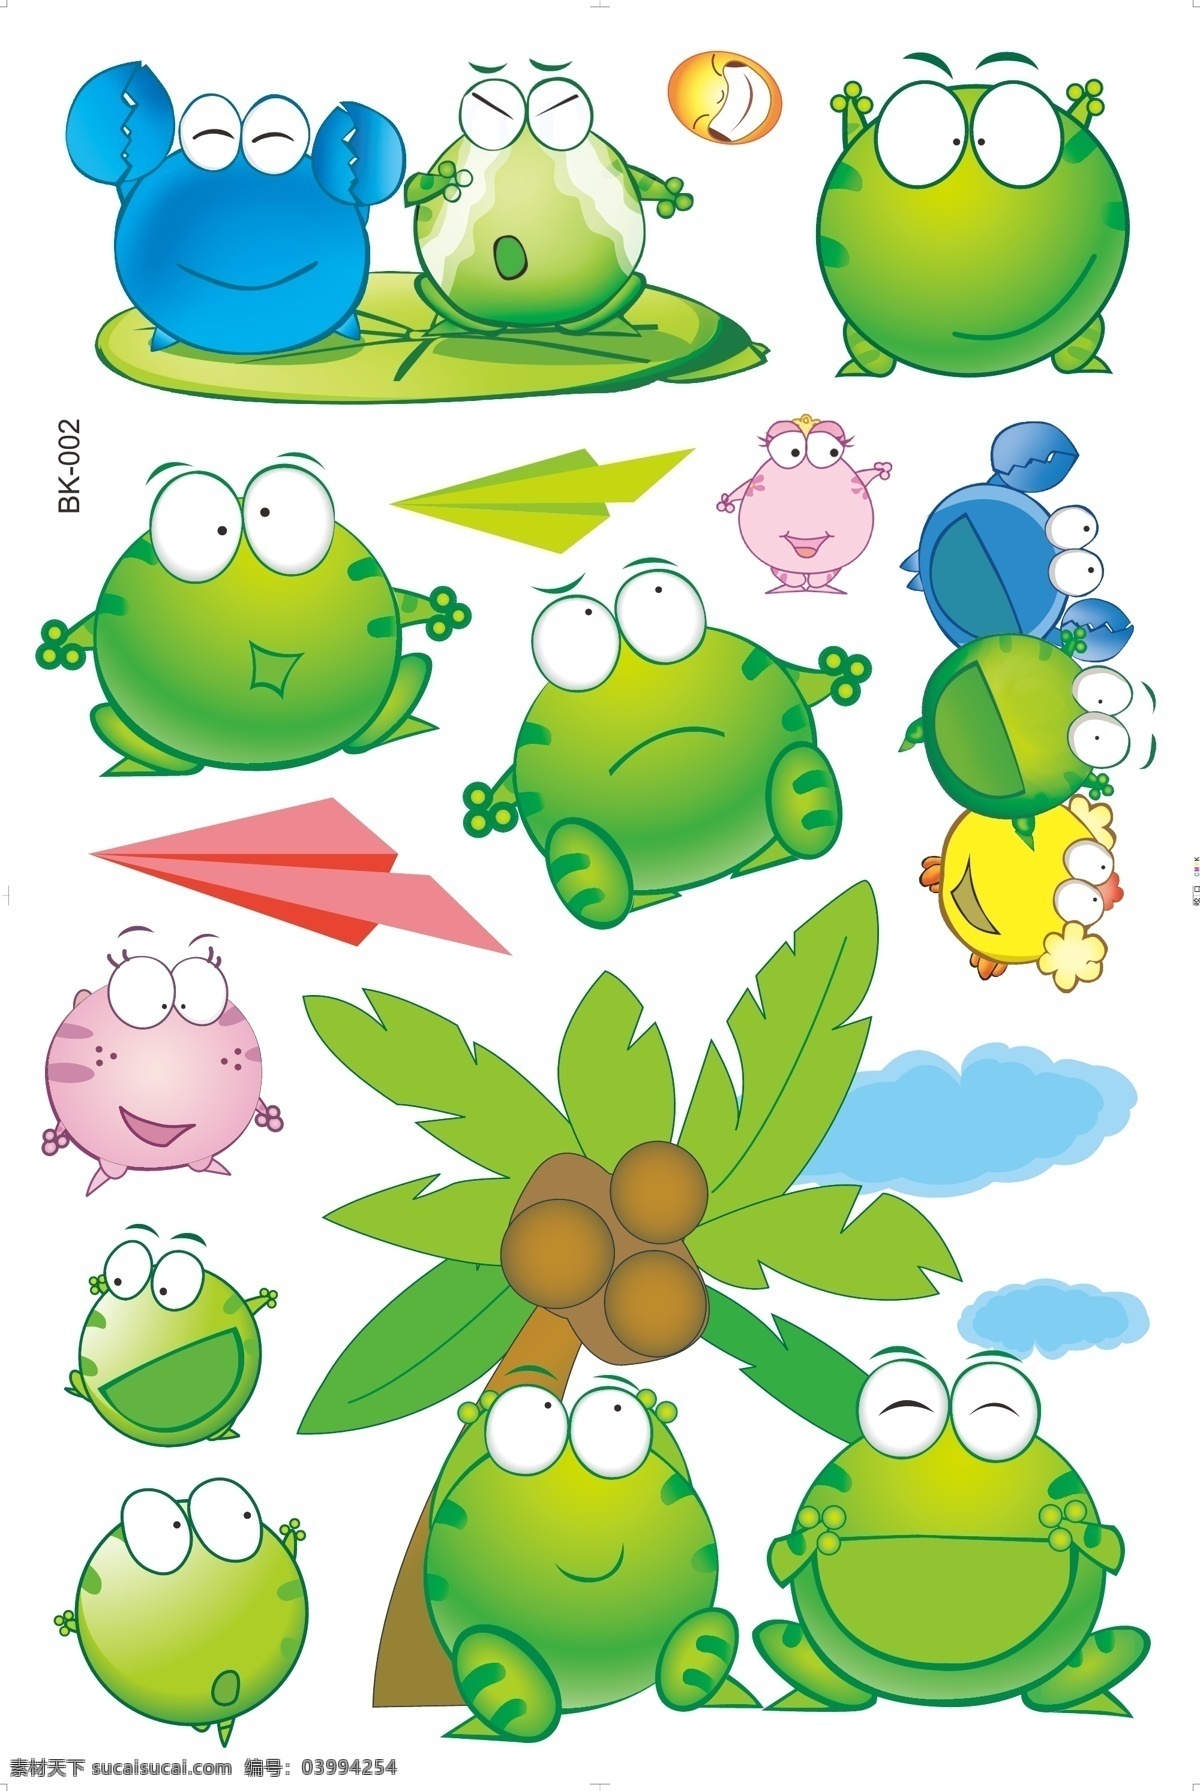 绿色 绿豆蛙 卡通 可爱 墙贴 leon 青蛙 动漫动画 动漫人物